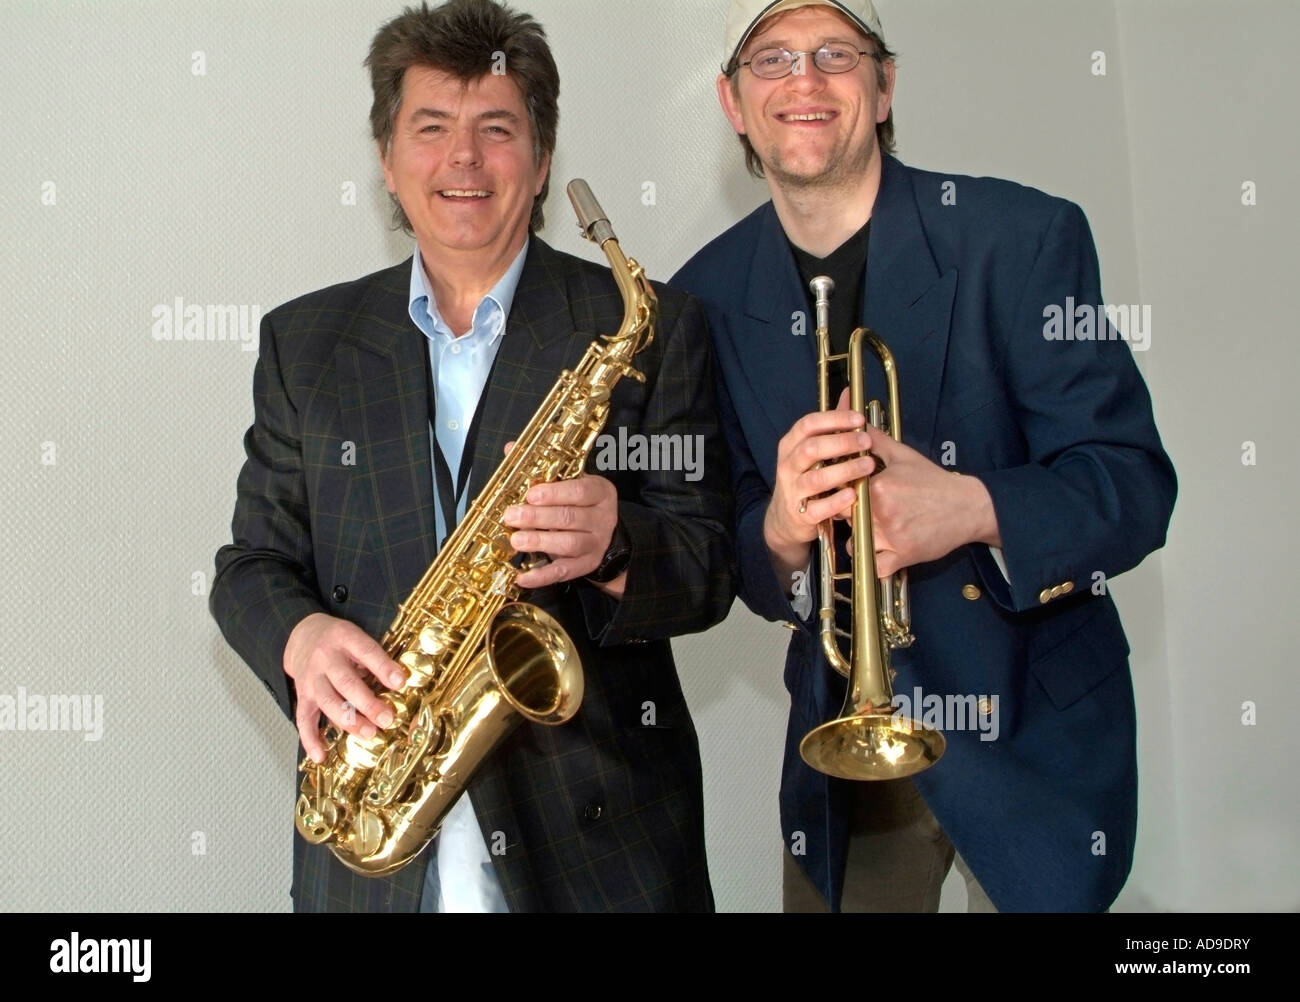 Saxophone trumpet -Fotos und -Bildmaterial in hoher Auflösung - Seite 2 -  Alamy